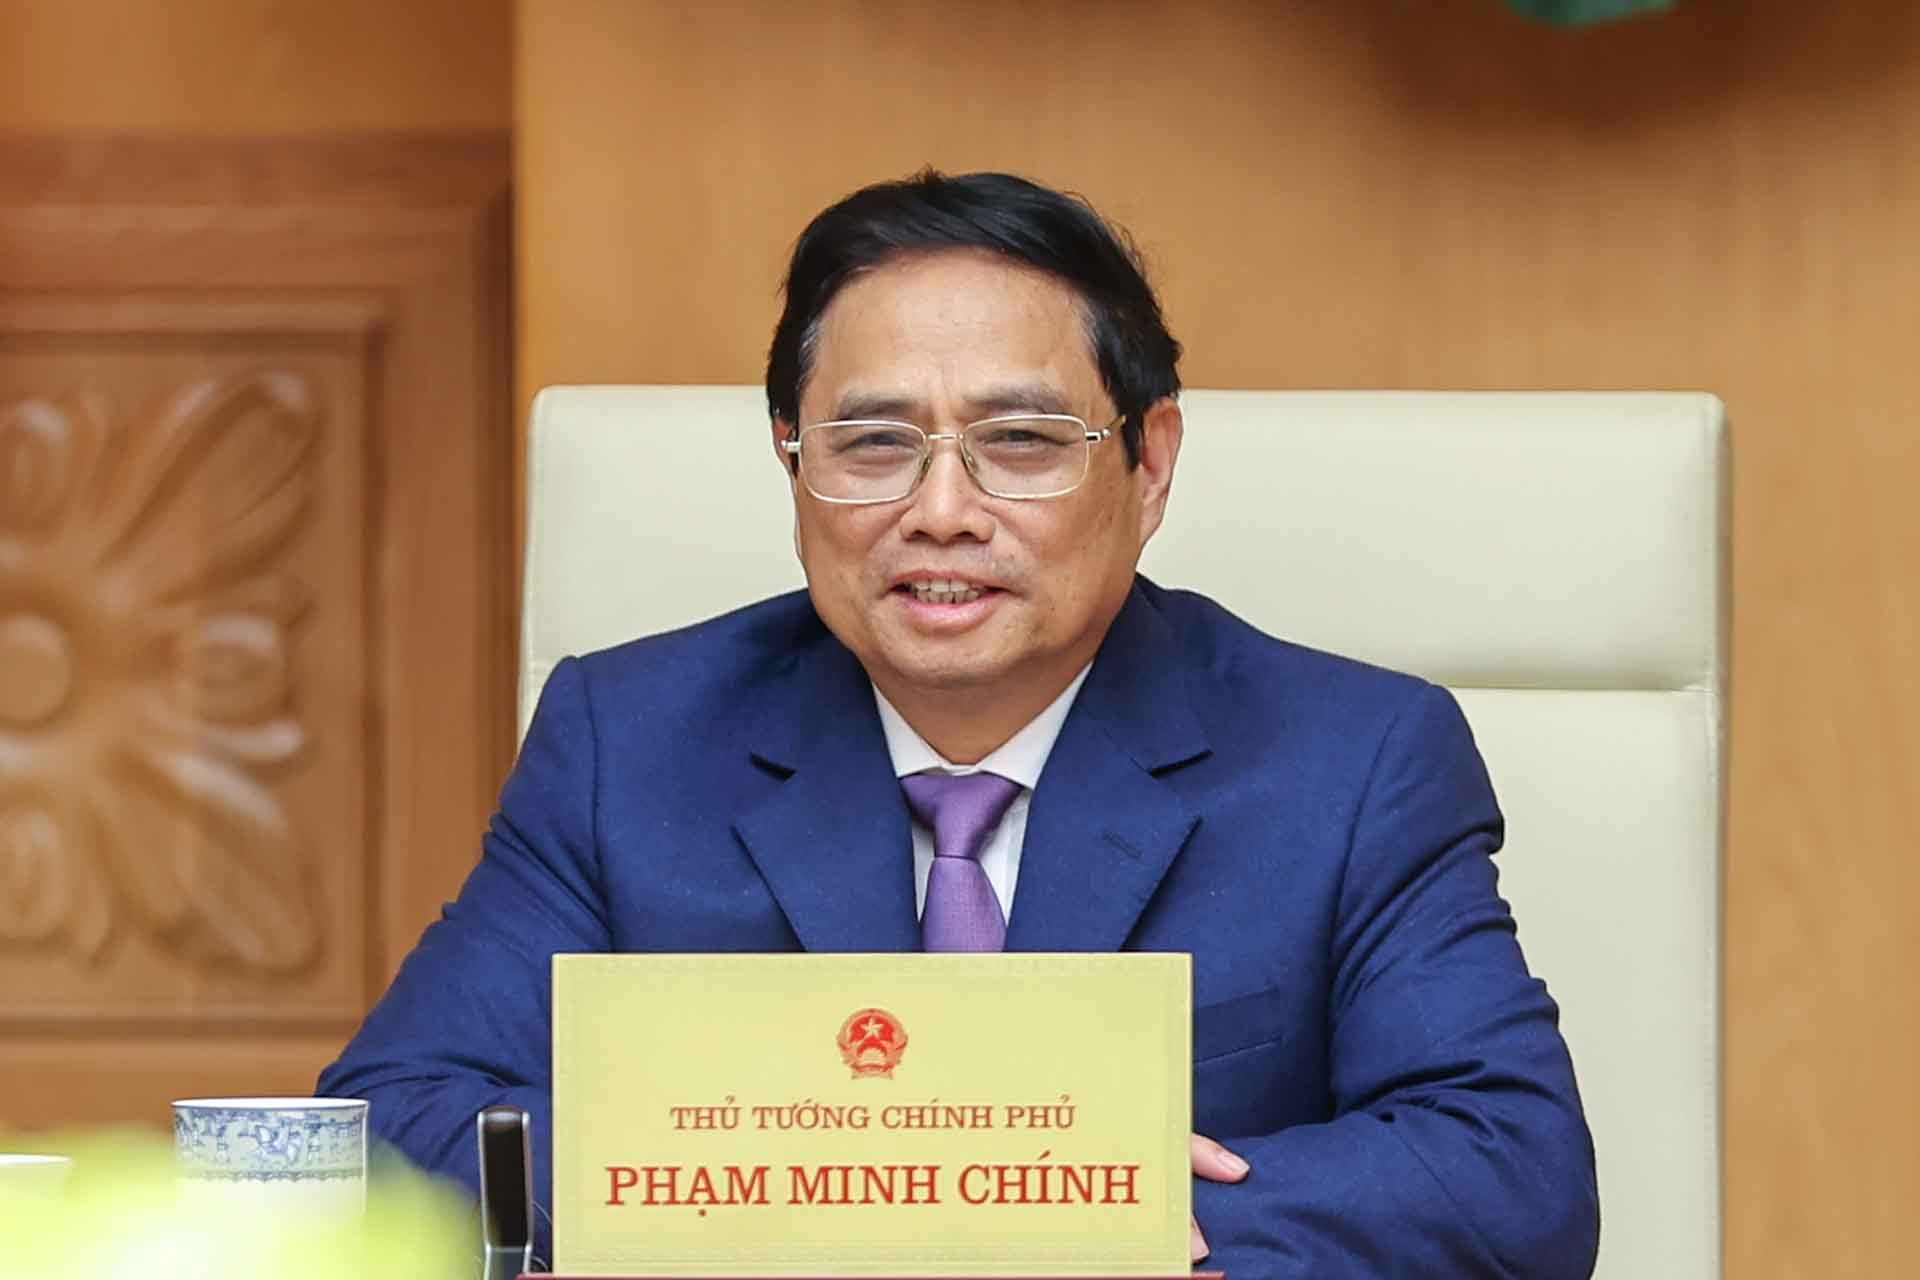 Thủ tướng Phạm Minh Chính phát biểu tại buổi tiếp đoàn Hội đồng kinh doanh EU-ASEAN và doanh nghiệp châu Âu tại Việt Nam. (Nguồn: VGP)